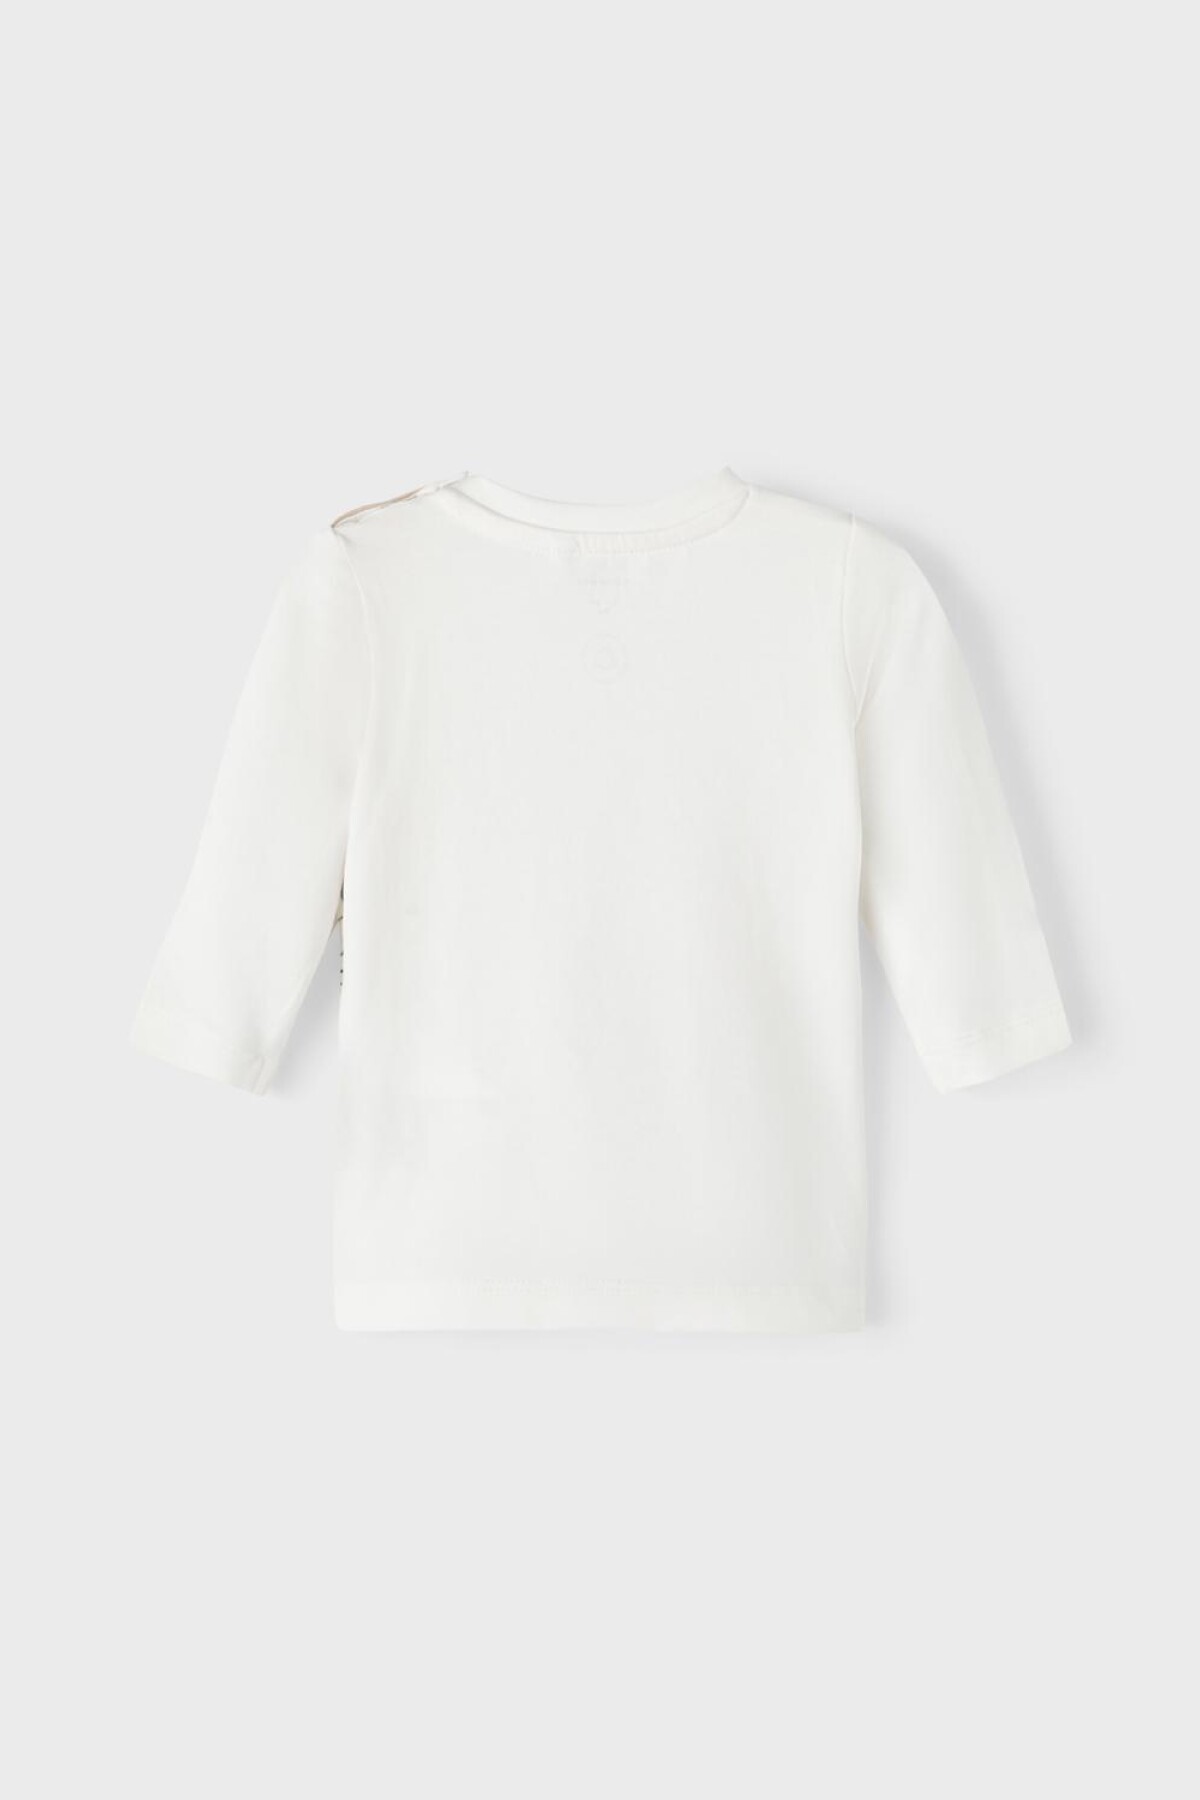 Camiseta Loris White Alyssum